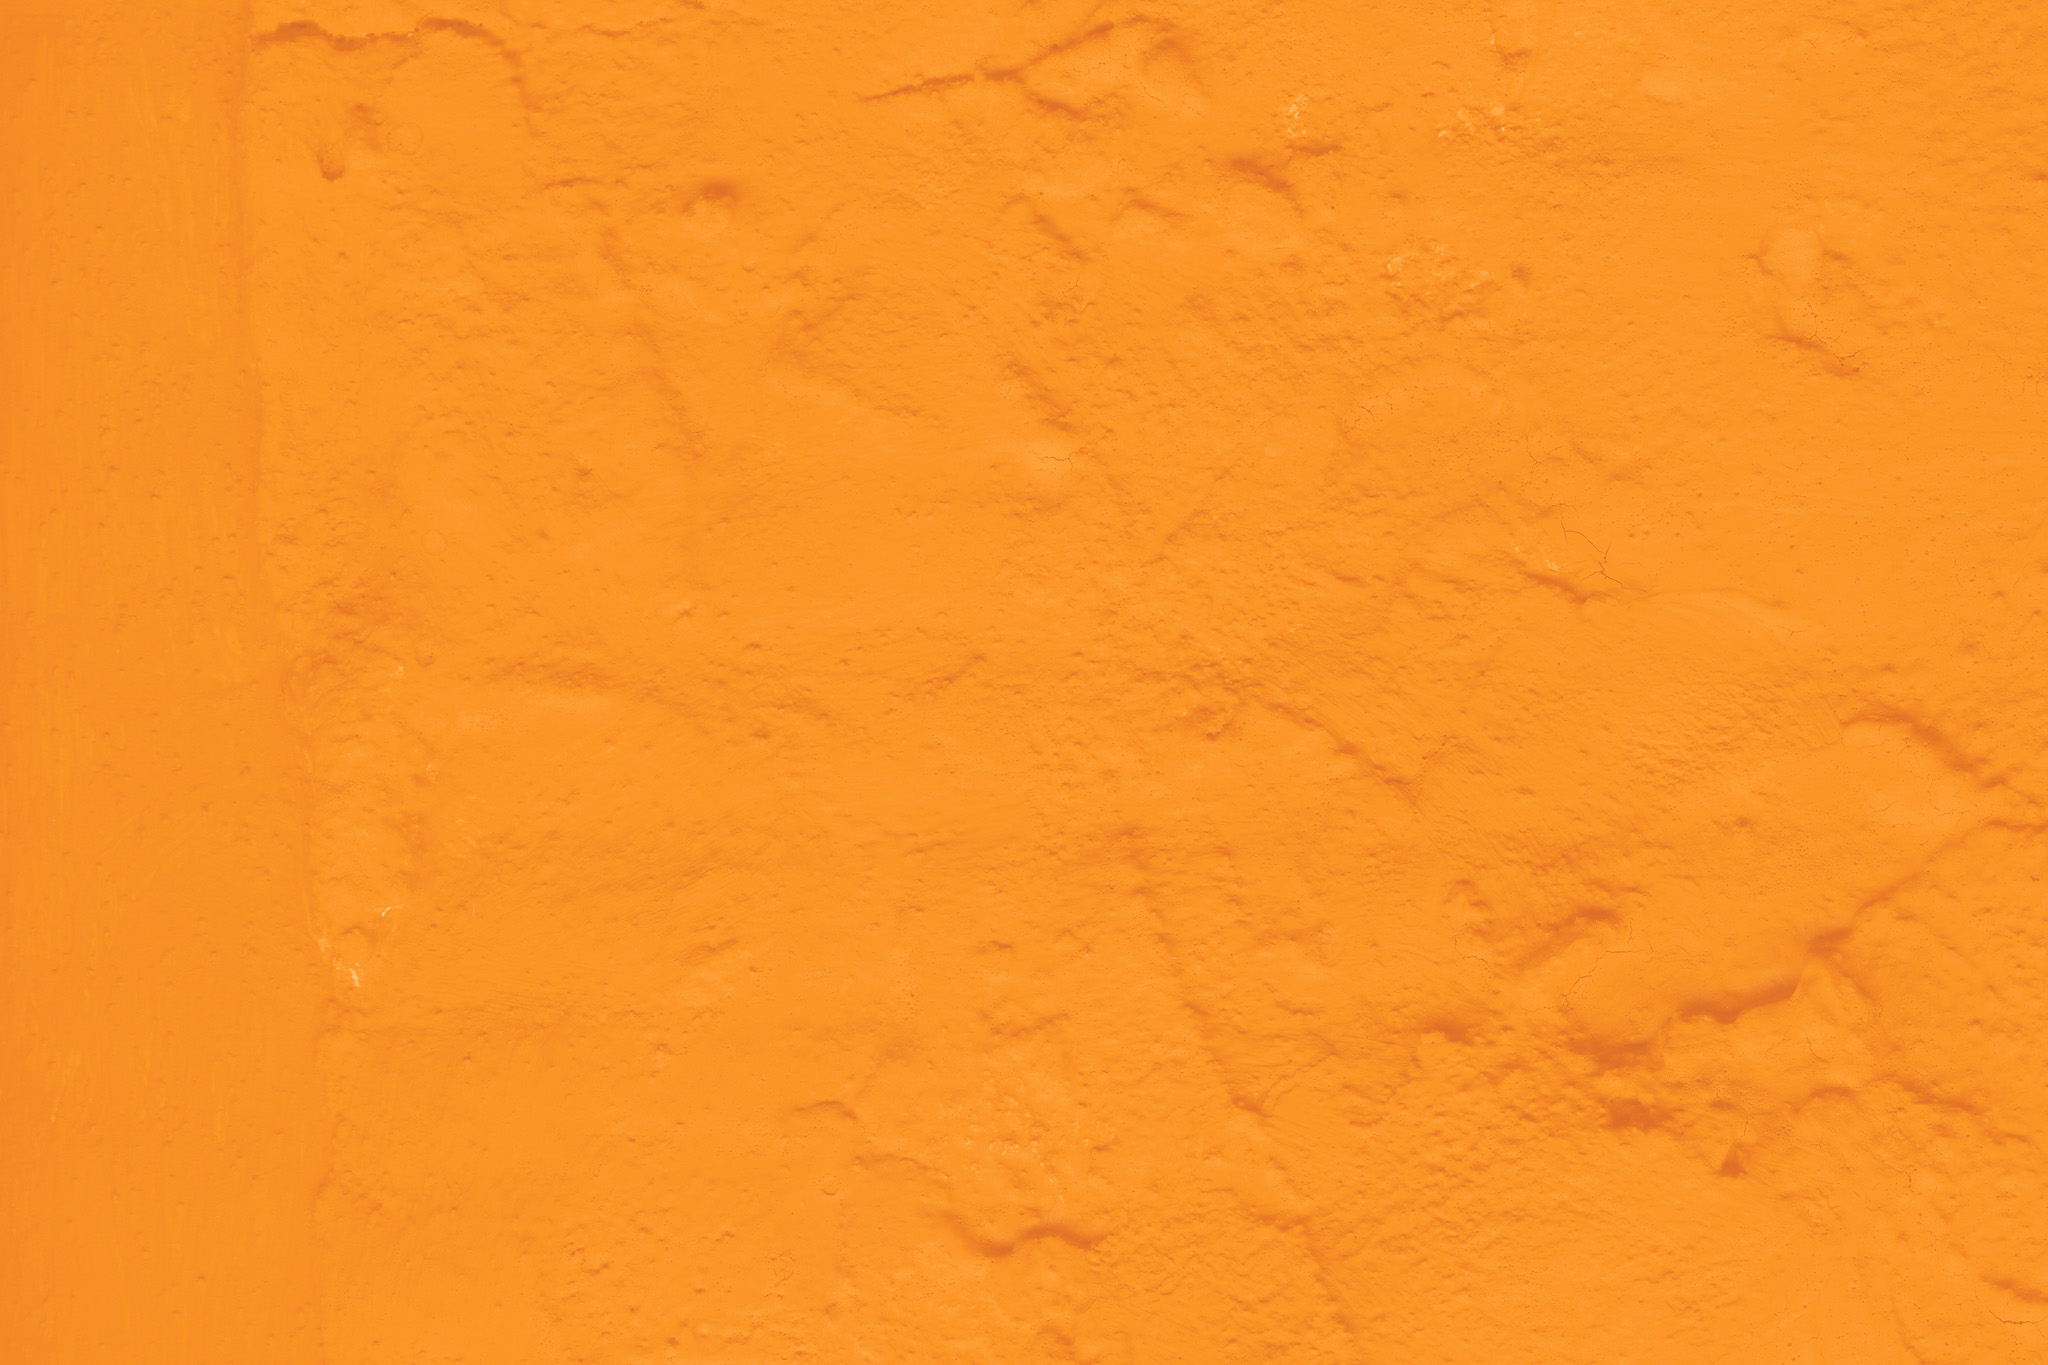 シンプルなオレンジ色のテクスチャ背景 の画像素材を無料ダウンロード 1 背景フリー素材 Beiz Images